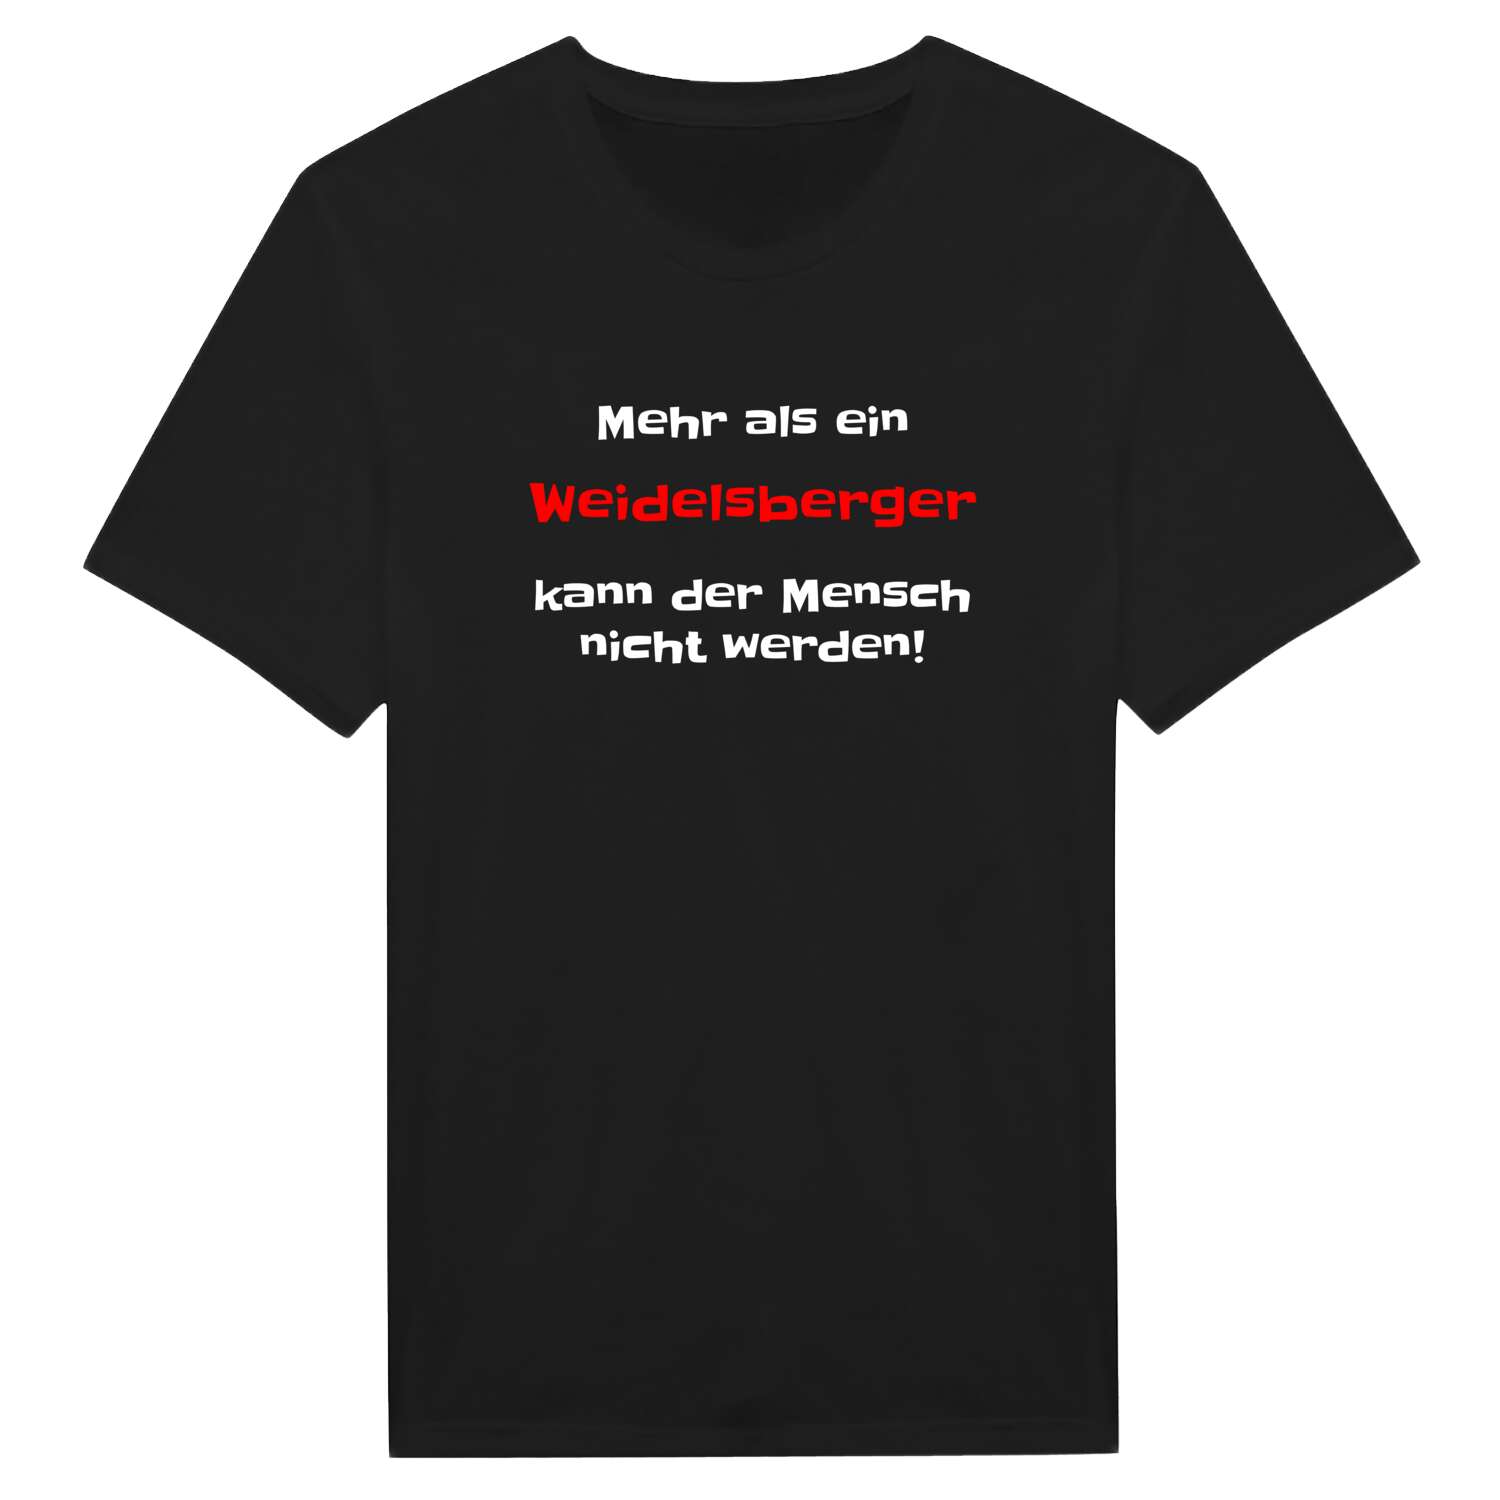 Weidelsberg T-Shirt »Mehr als ein«